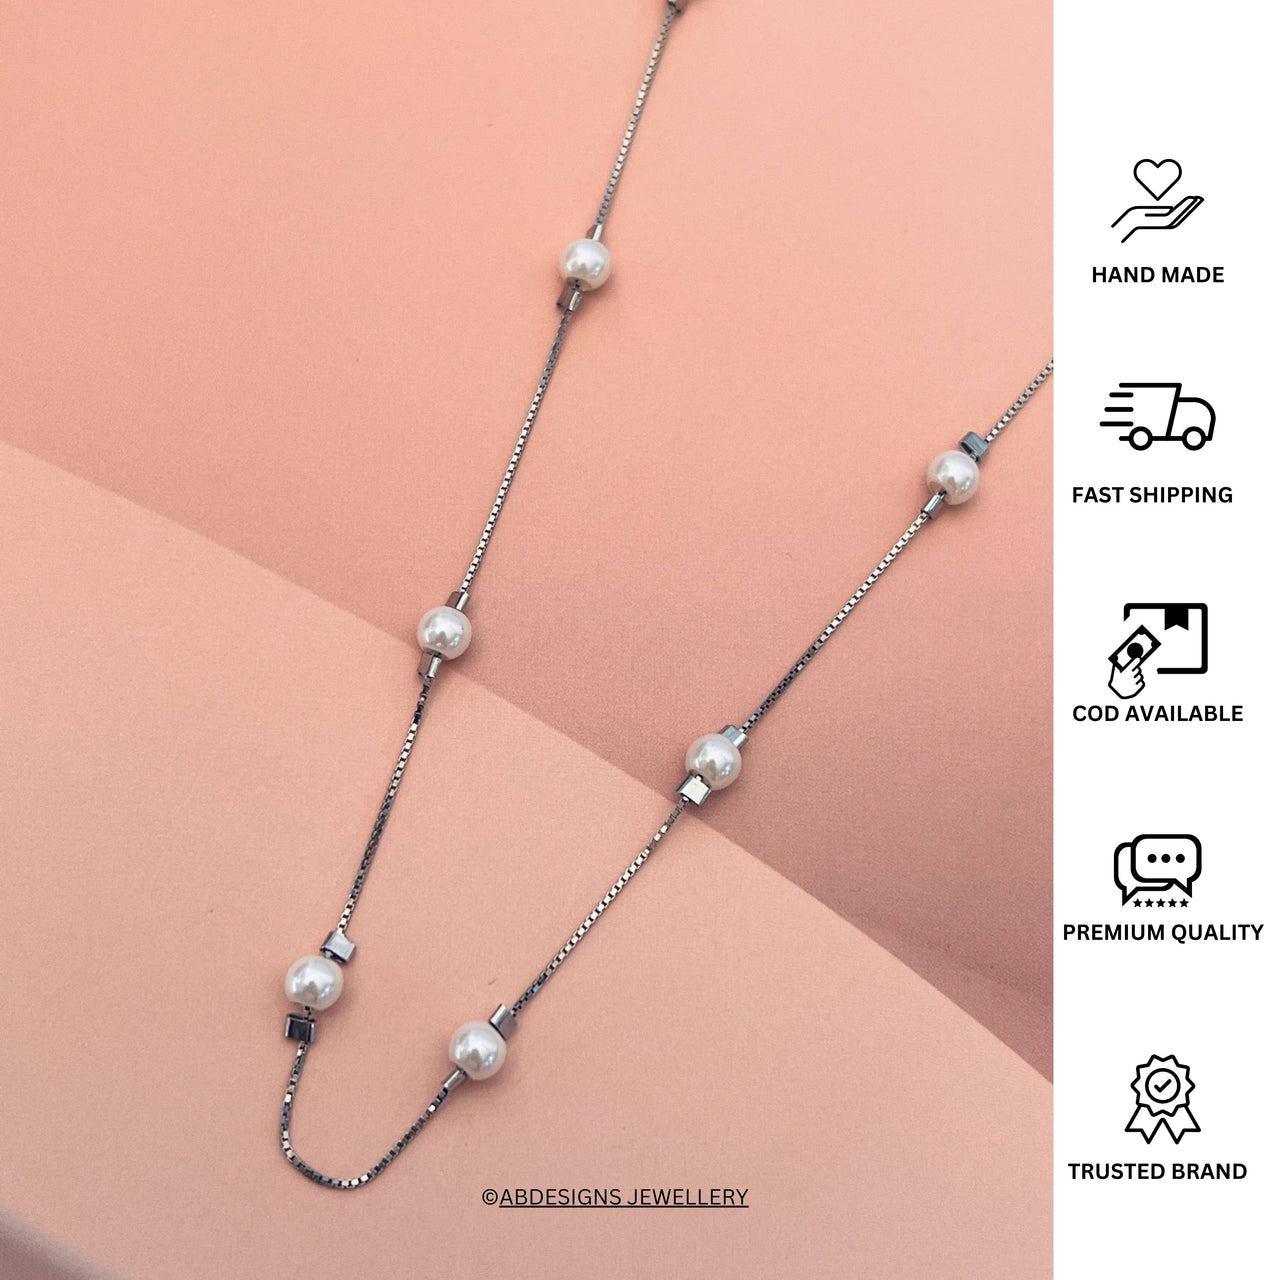 Buy 925 Pure Silver Pendant Chain